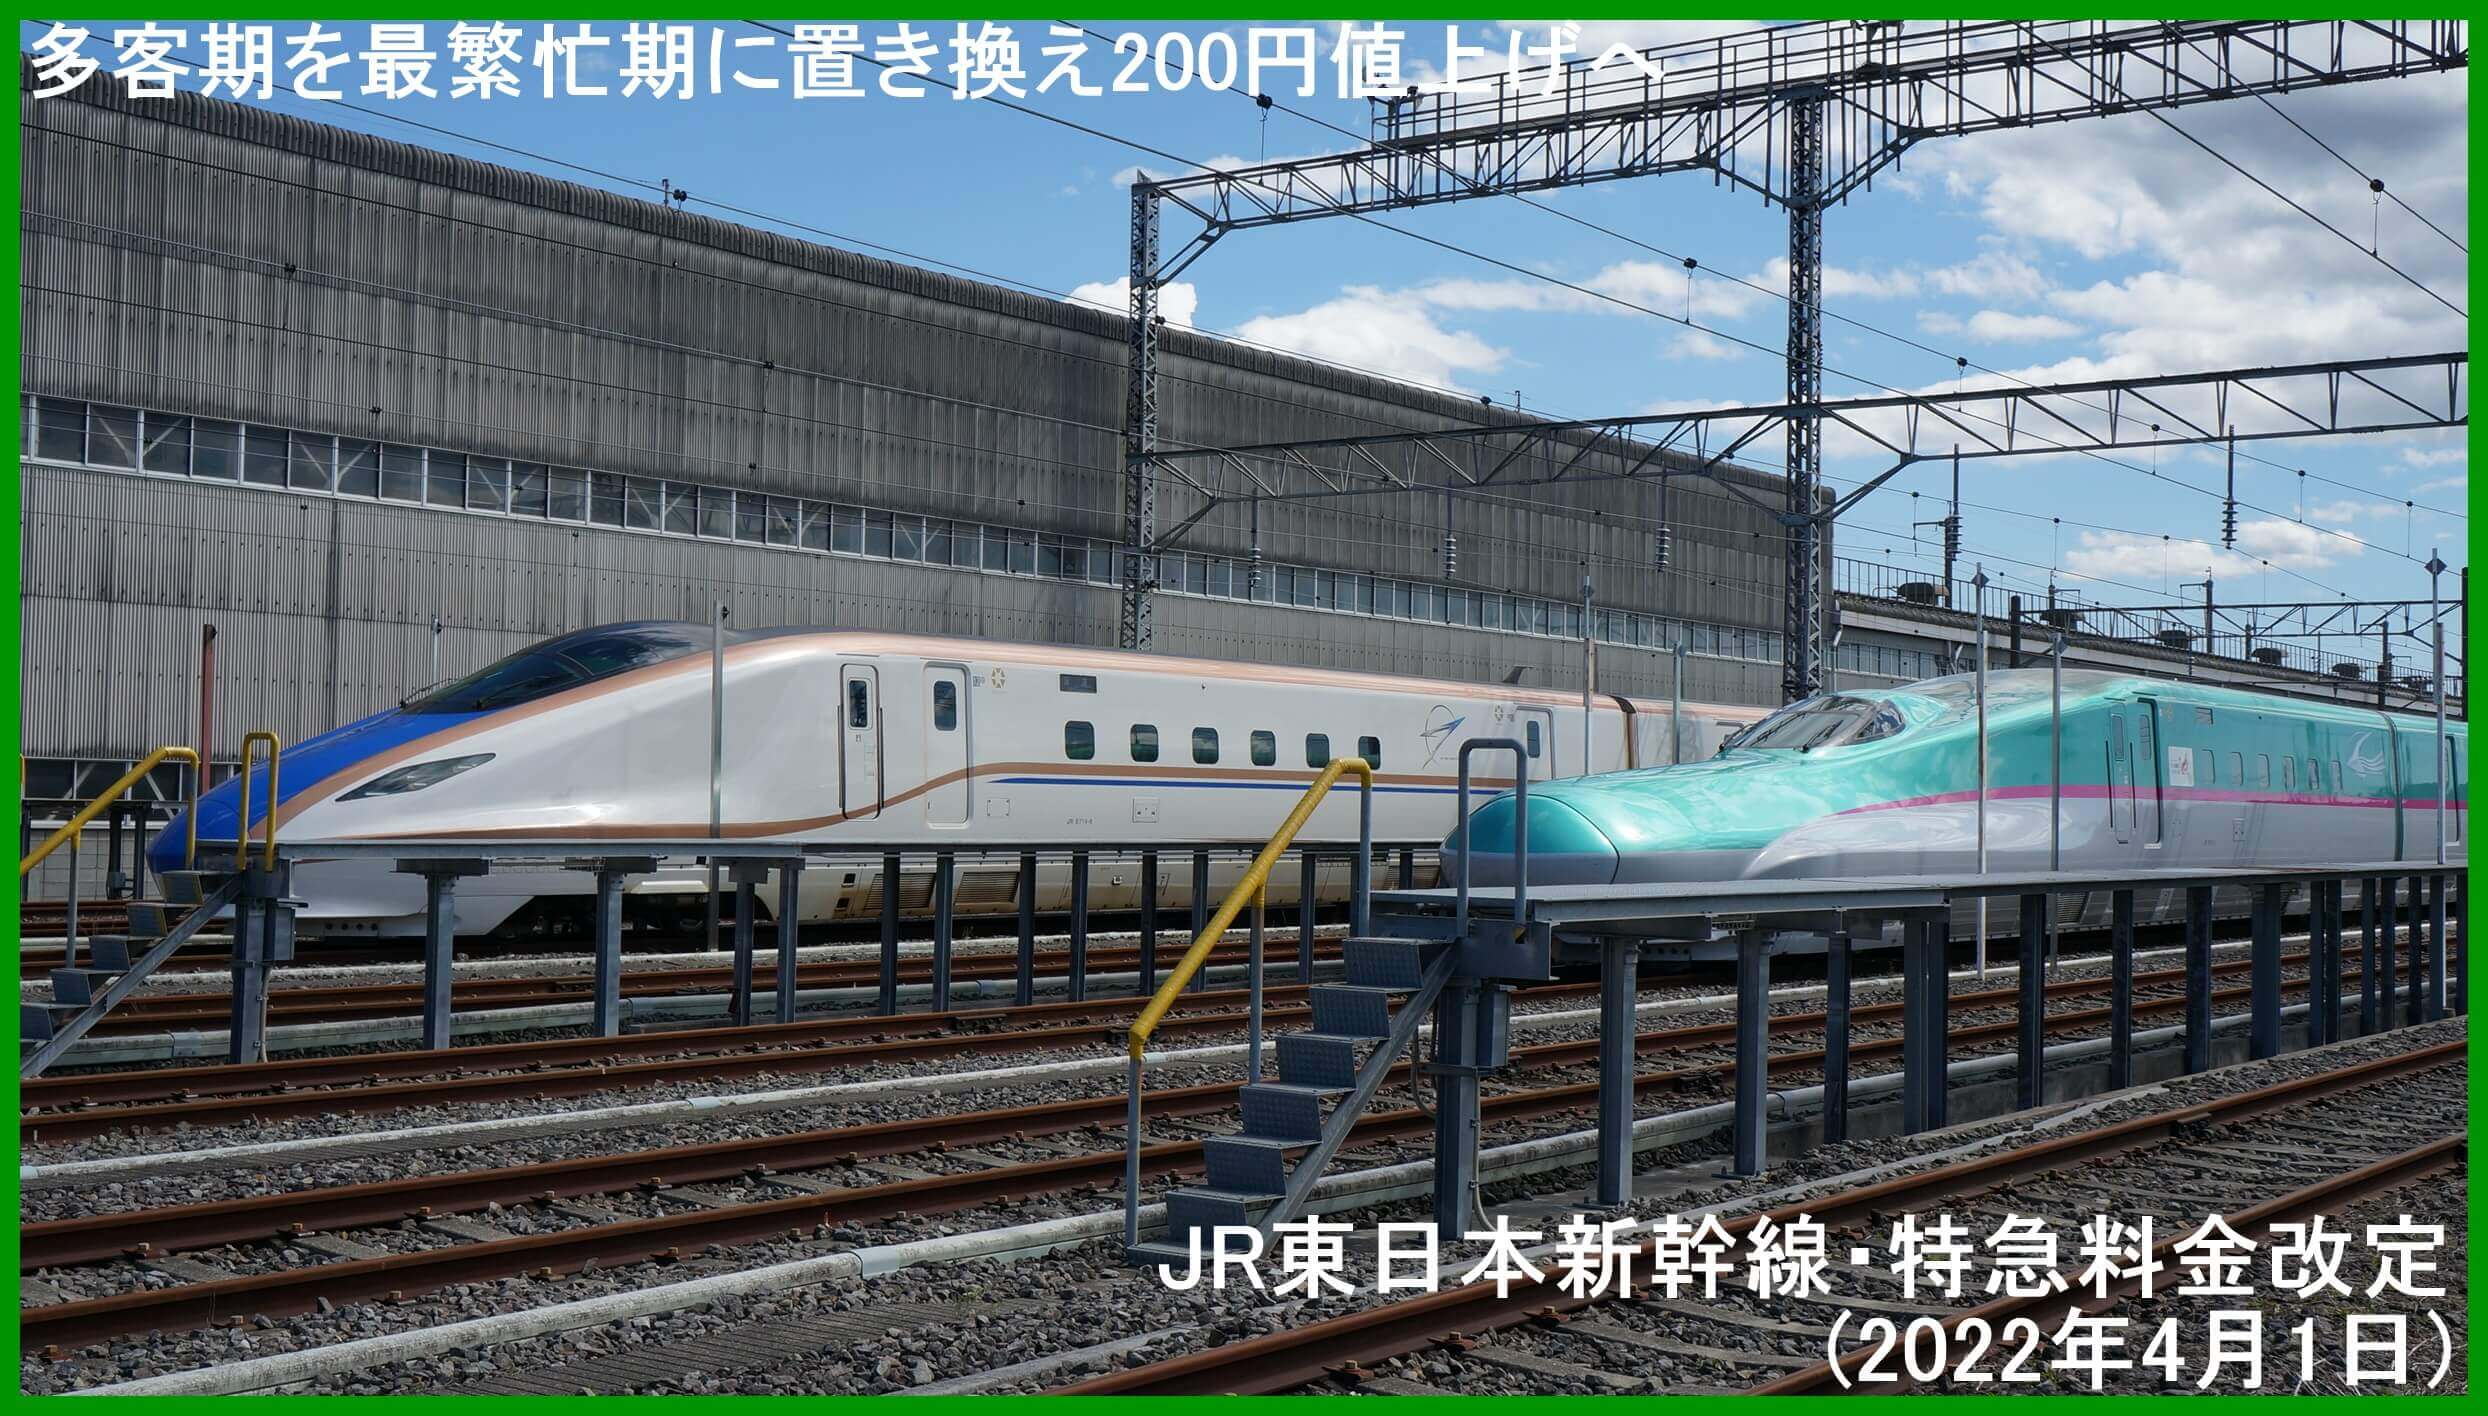 多客期を最繁忙期に置き換え200円値上げへ　JR東日本新幹線・特急料金改定(2022年4月1日)